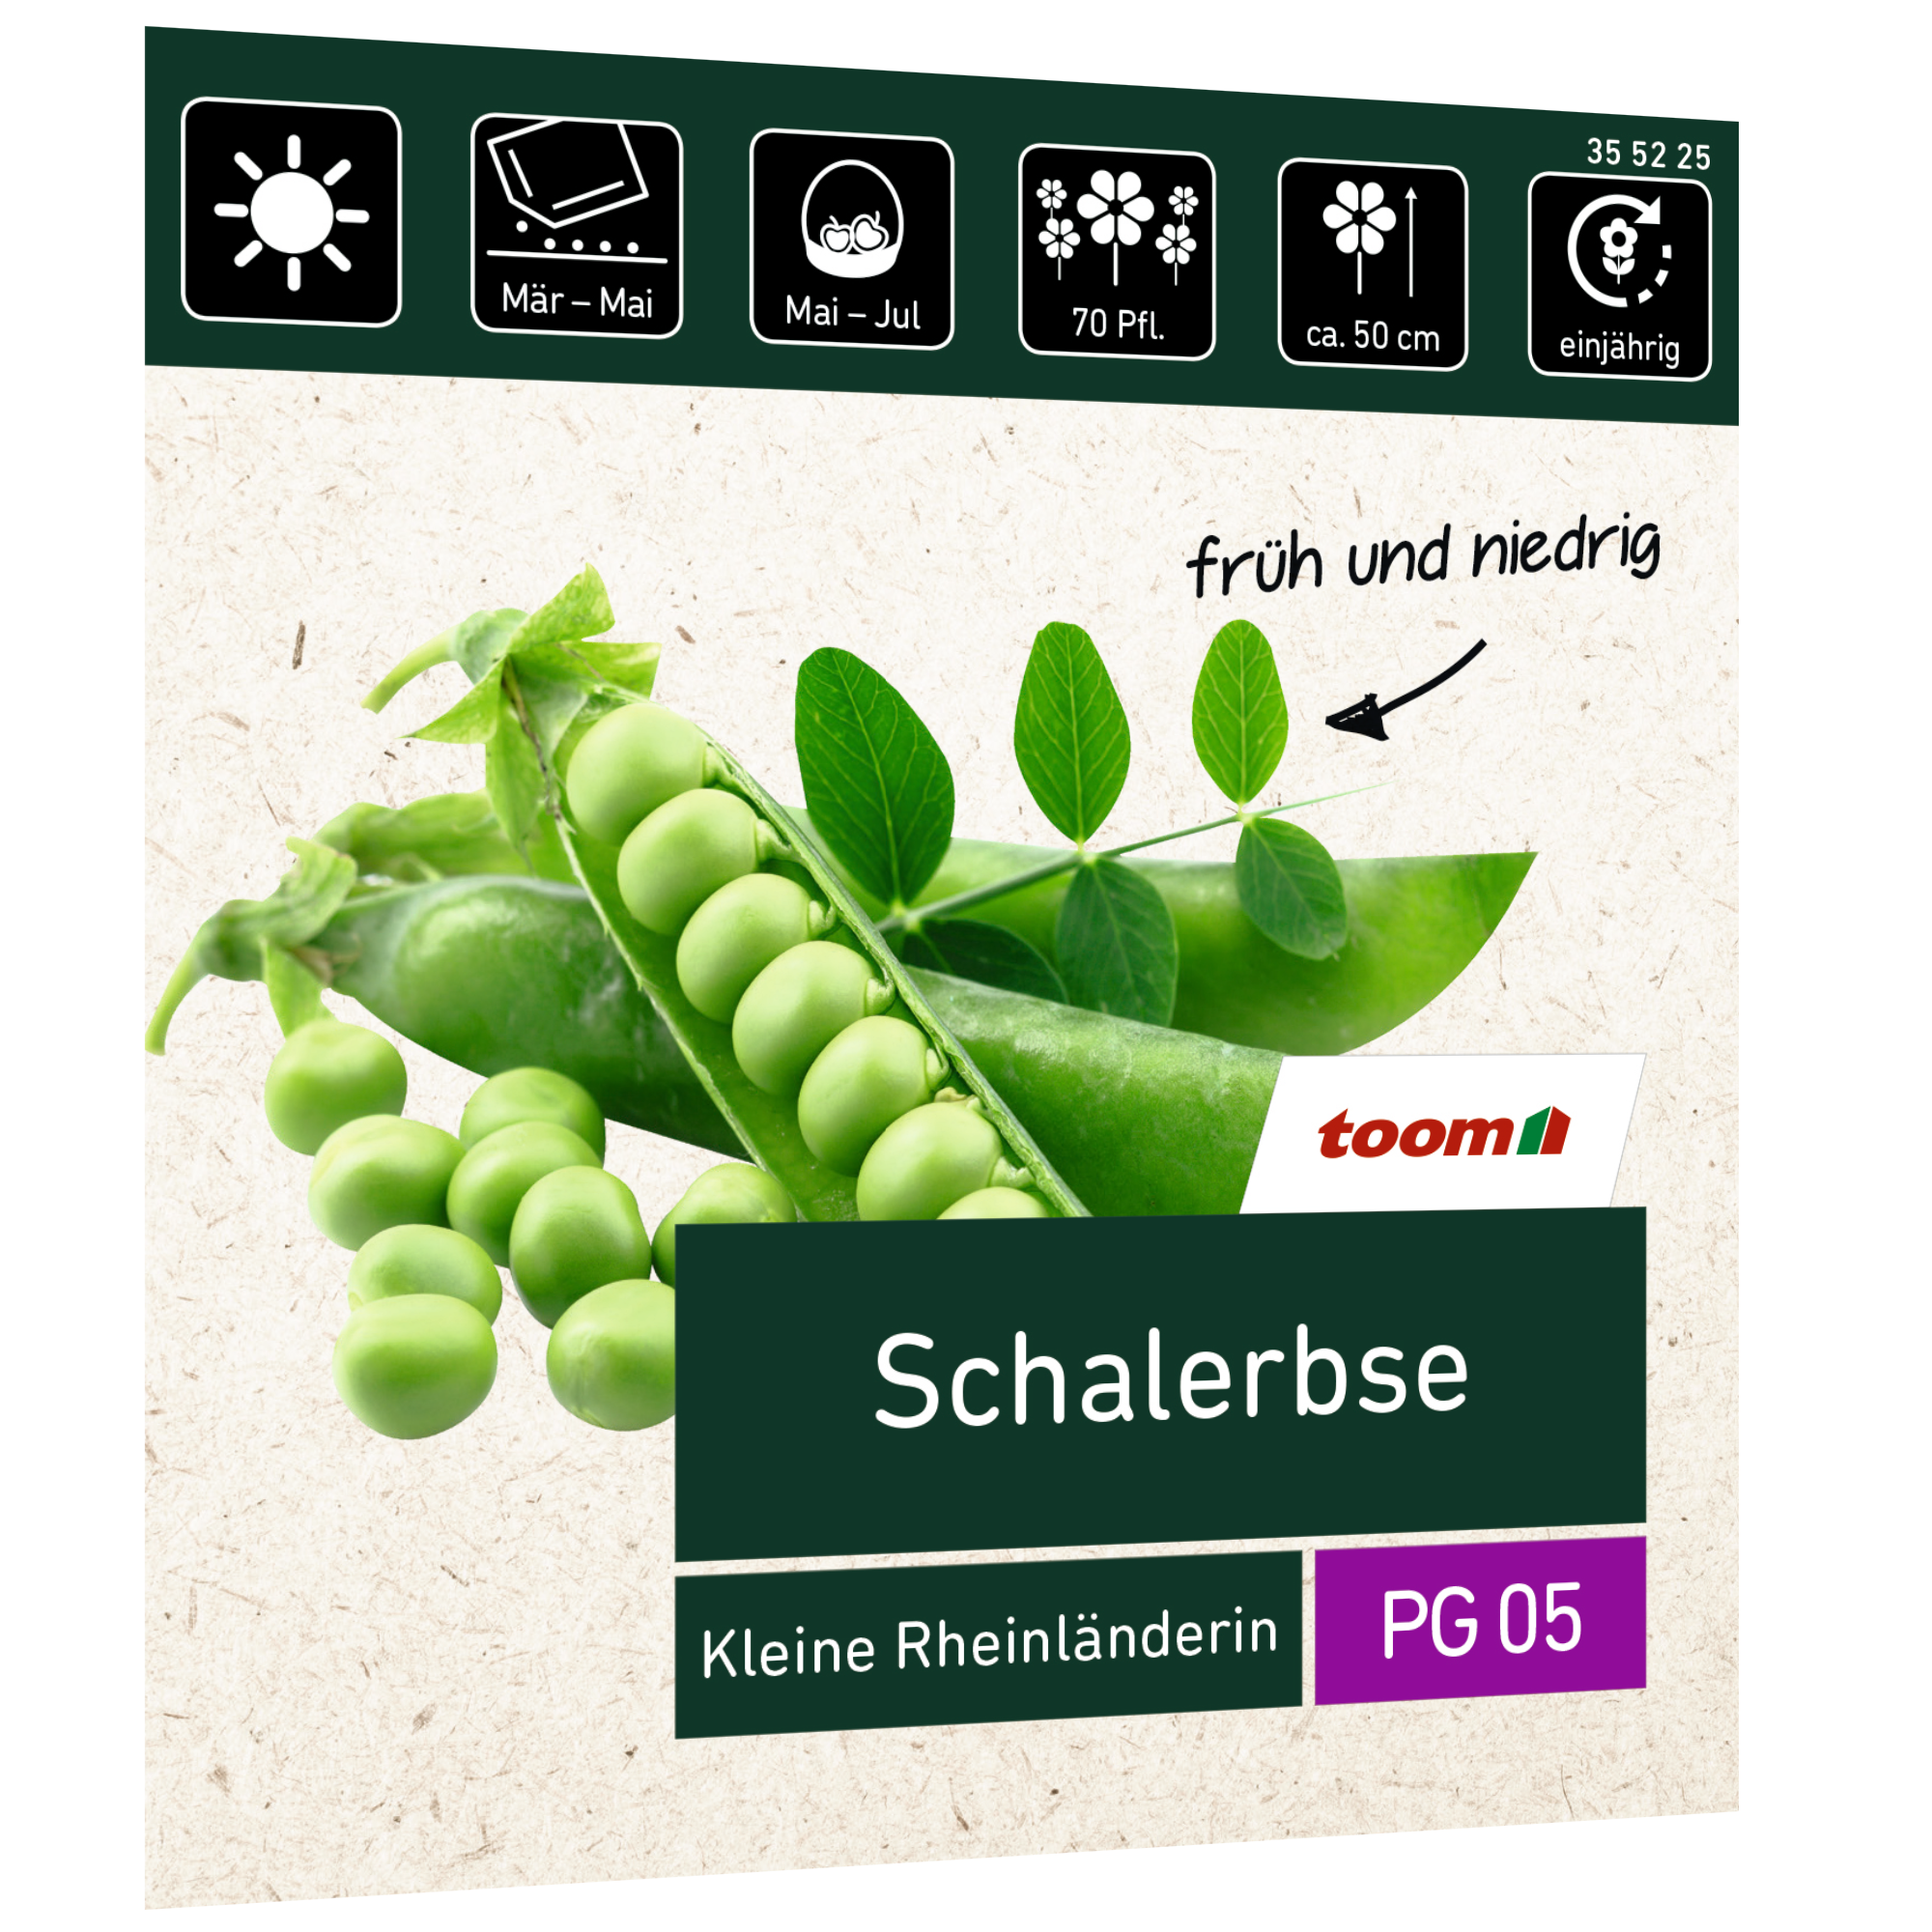 Schalerbse 'Kleine Rheinländerin' + product picture